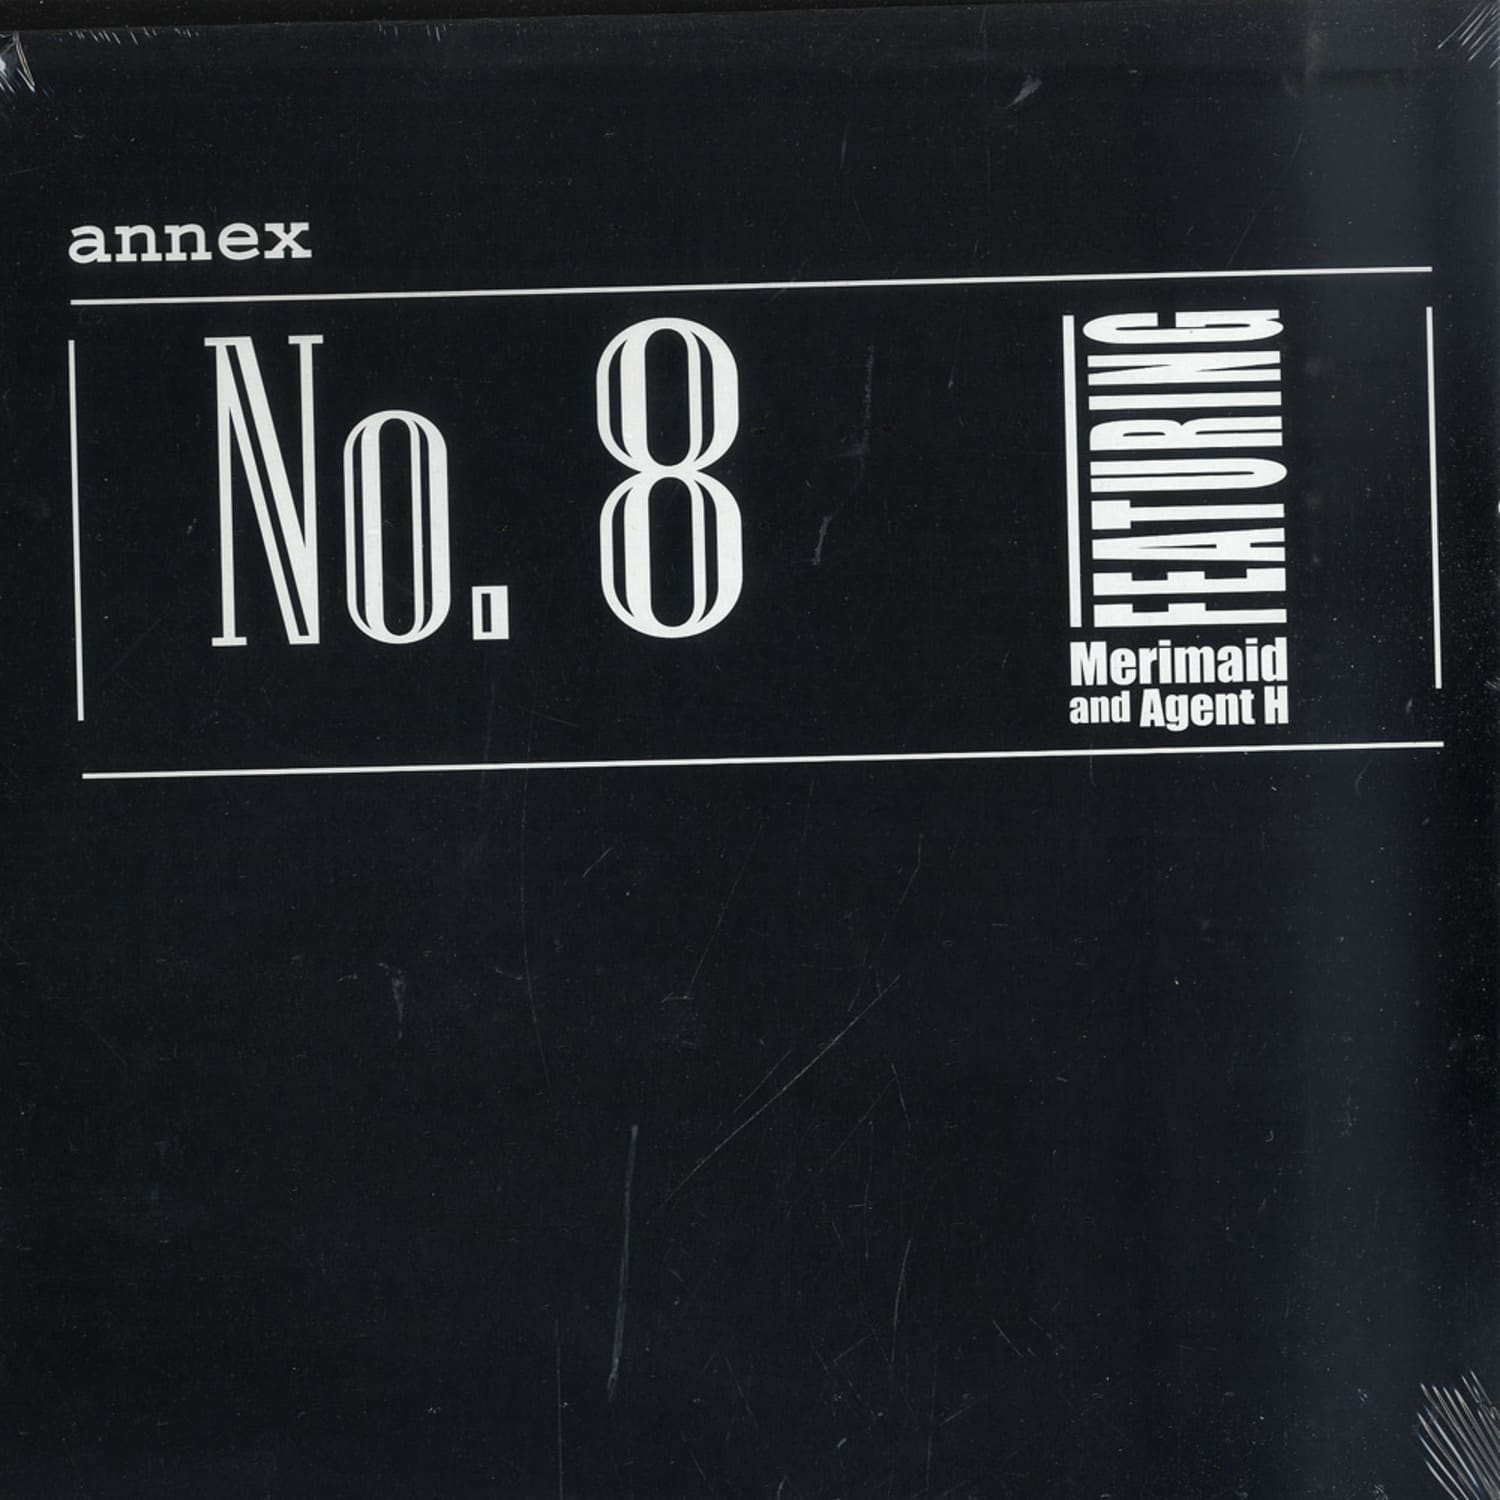 Annex - NO. 8